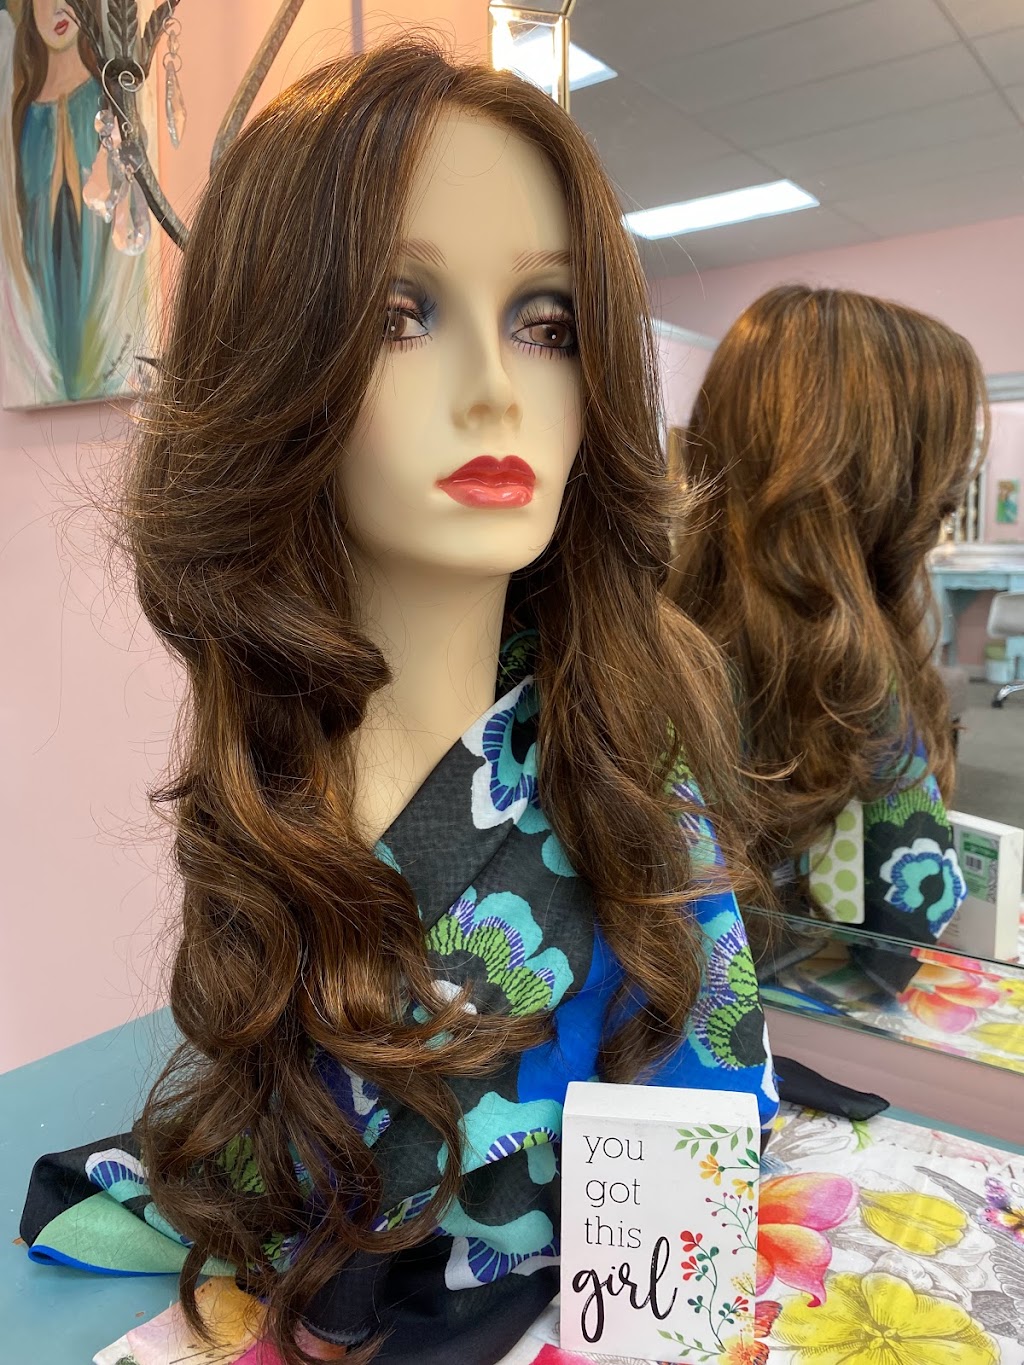 Angel Hair Wig Gallery | 2940 Wakefield Pines Dr #107, Raleigh, NC 27614 | Phone: (919) 488-4108